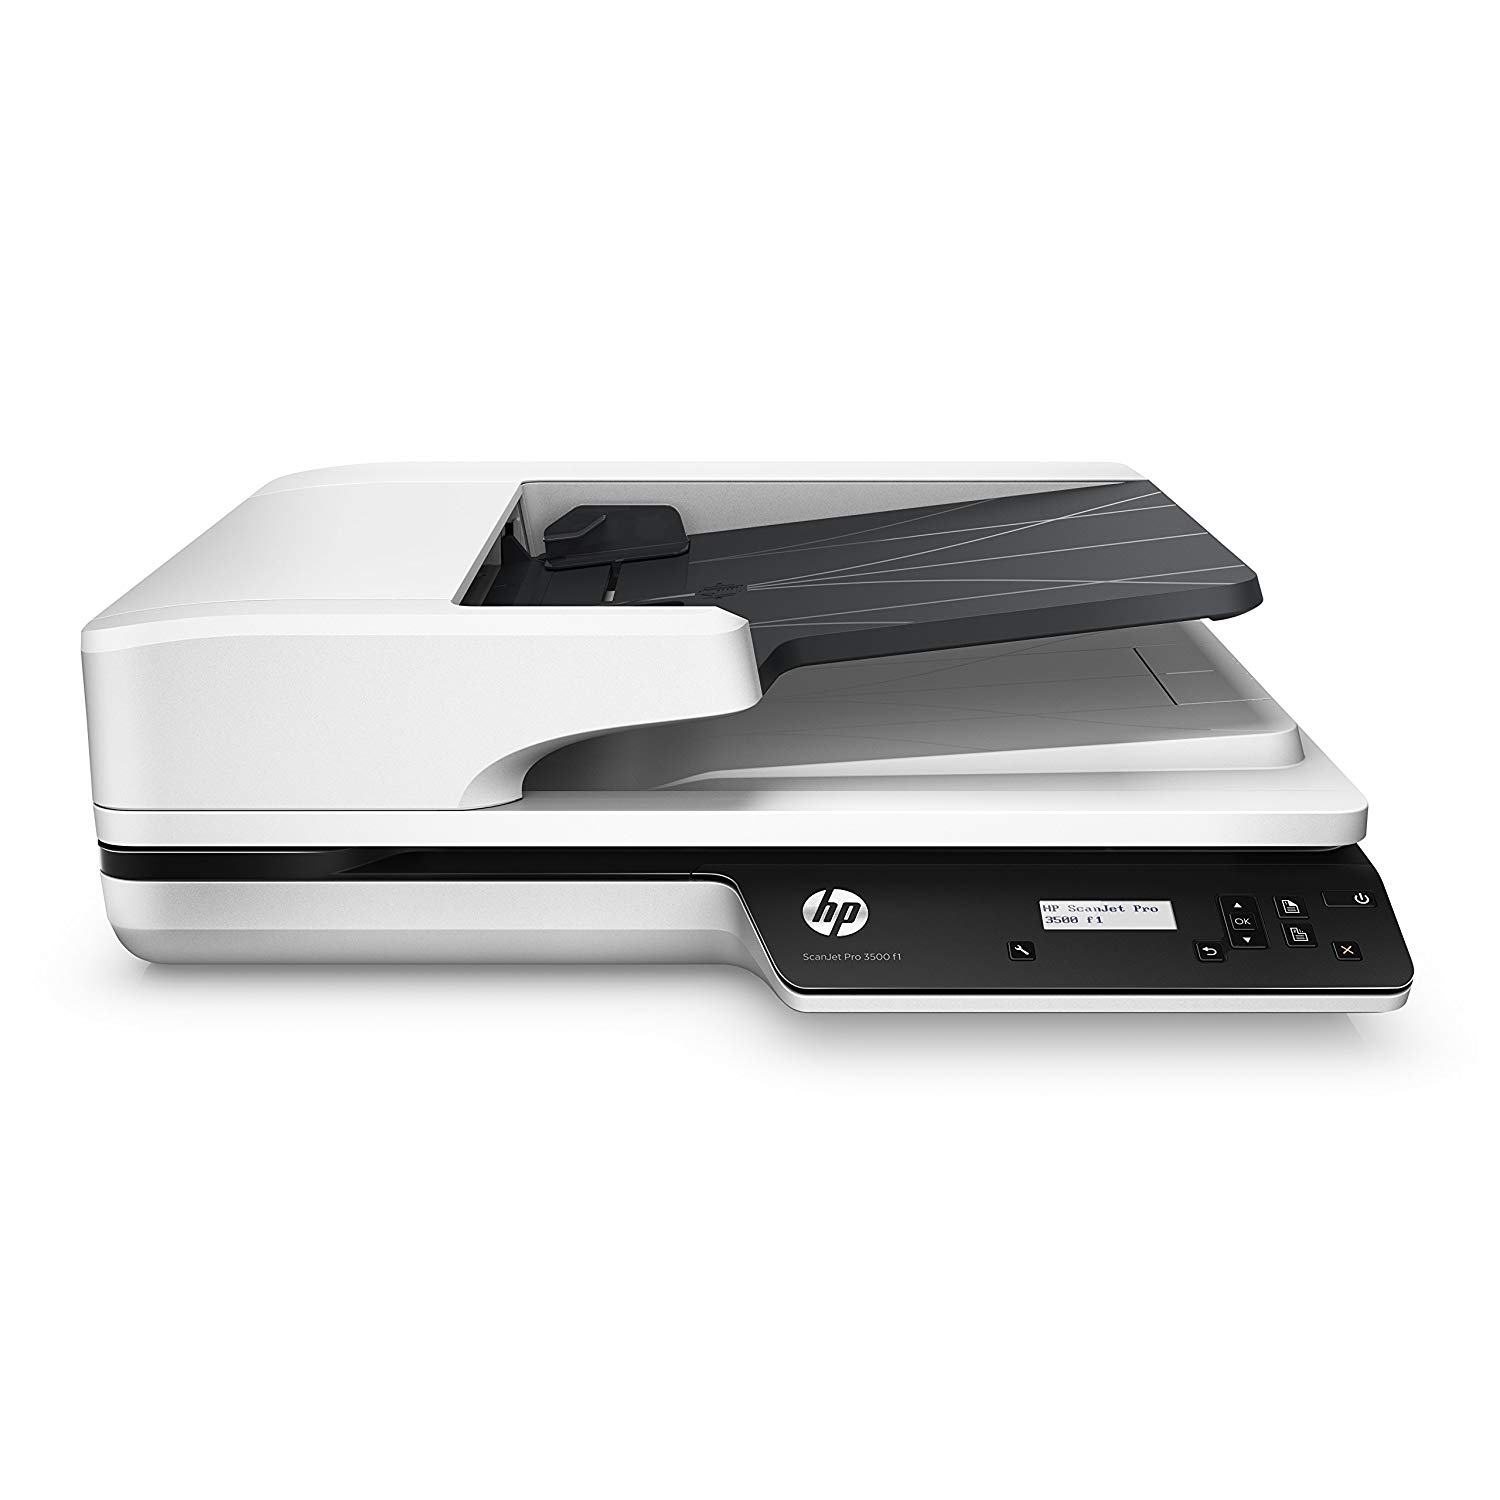 HP ScanJet Pro 3500 F1 Flatbed OCR Scanner